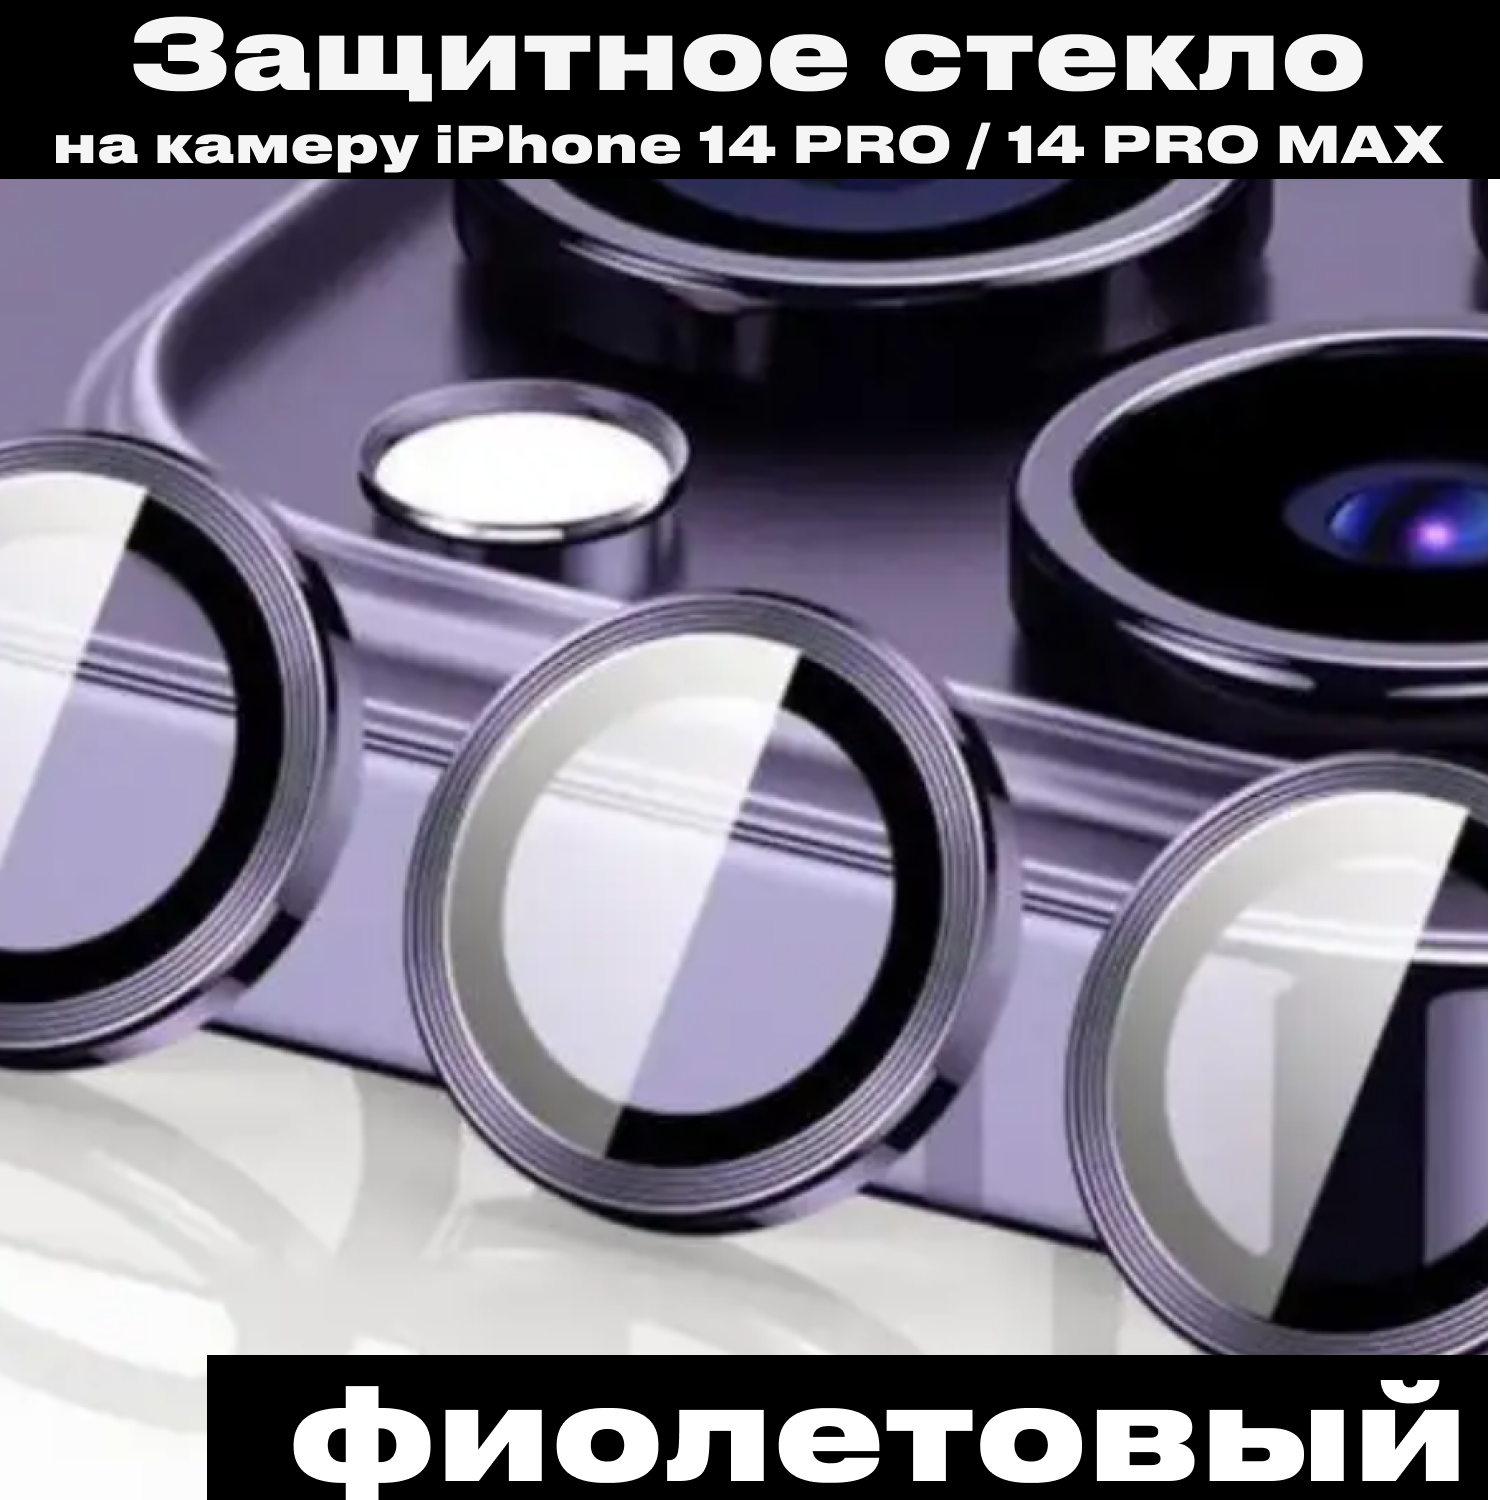 Защита камеры iPhone 14 Pro / 14 Pro Max фиолетовые. Линзы стекла